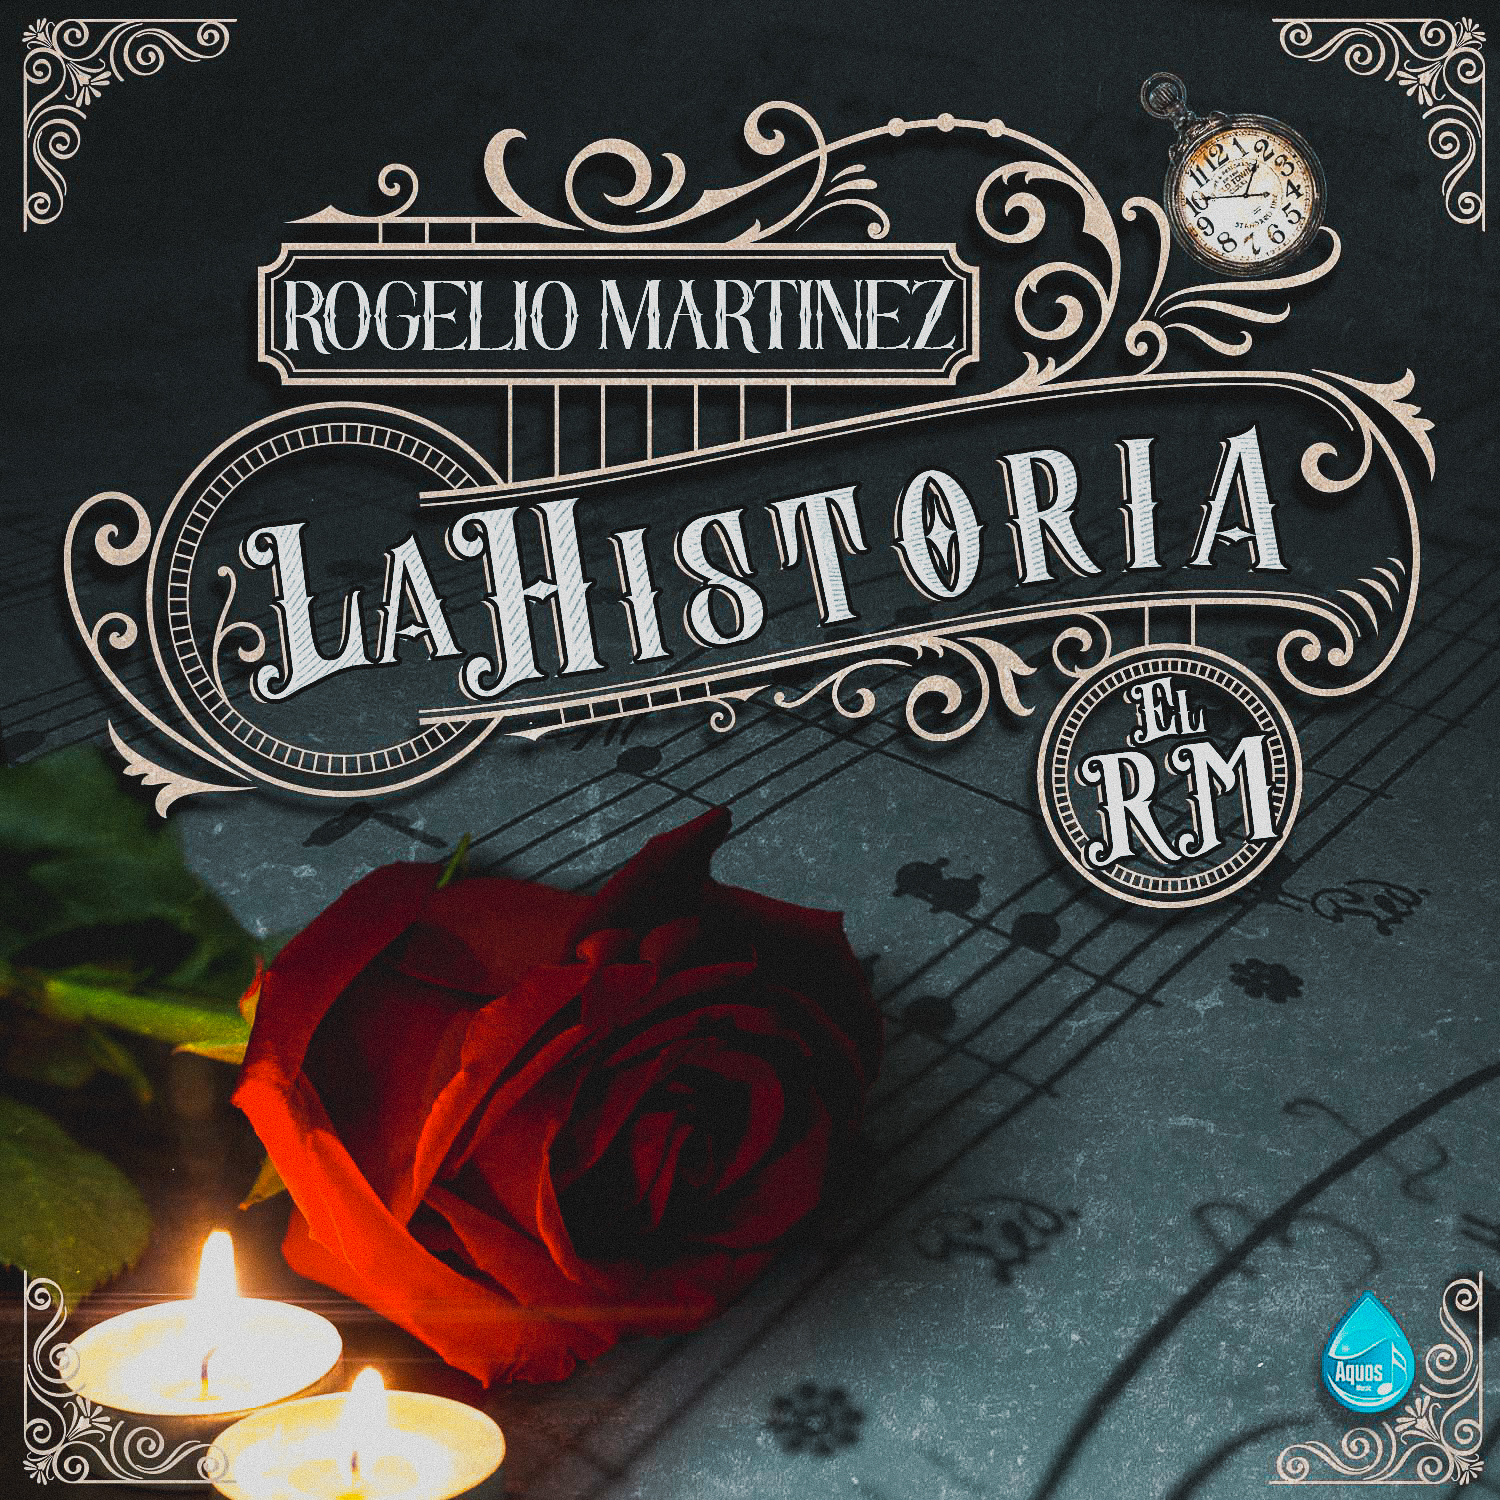 ROGELIO MARTÍNEZ presenta nuevo disco “La Historia”